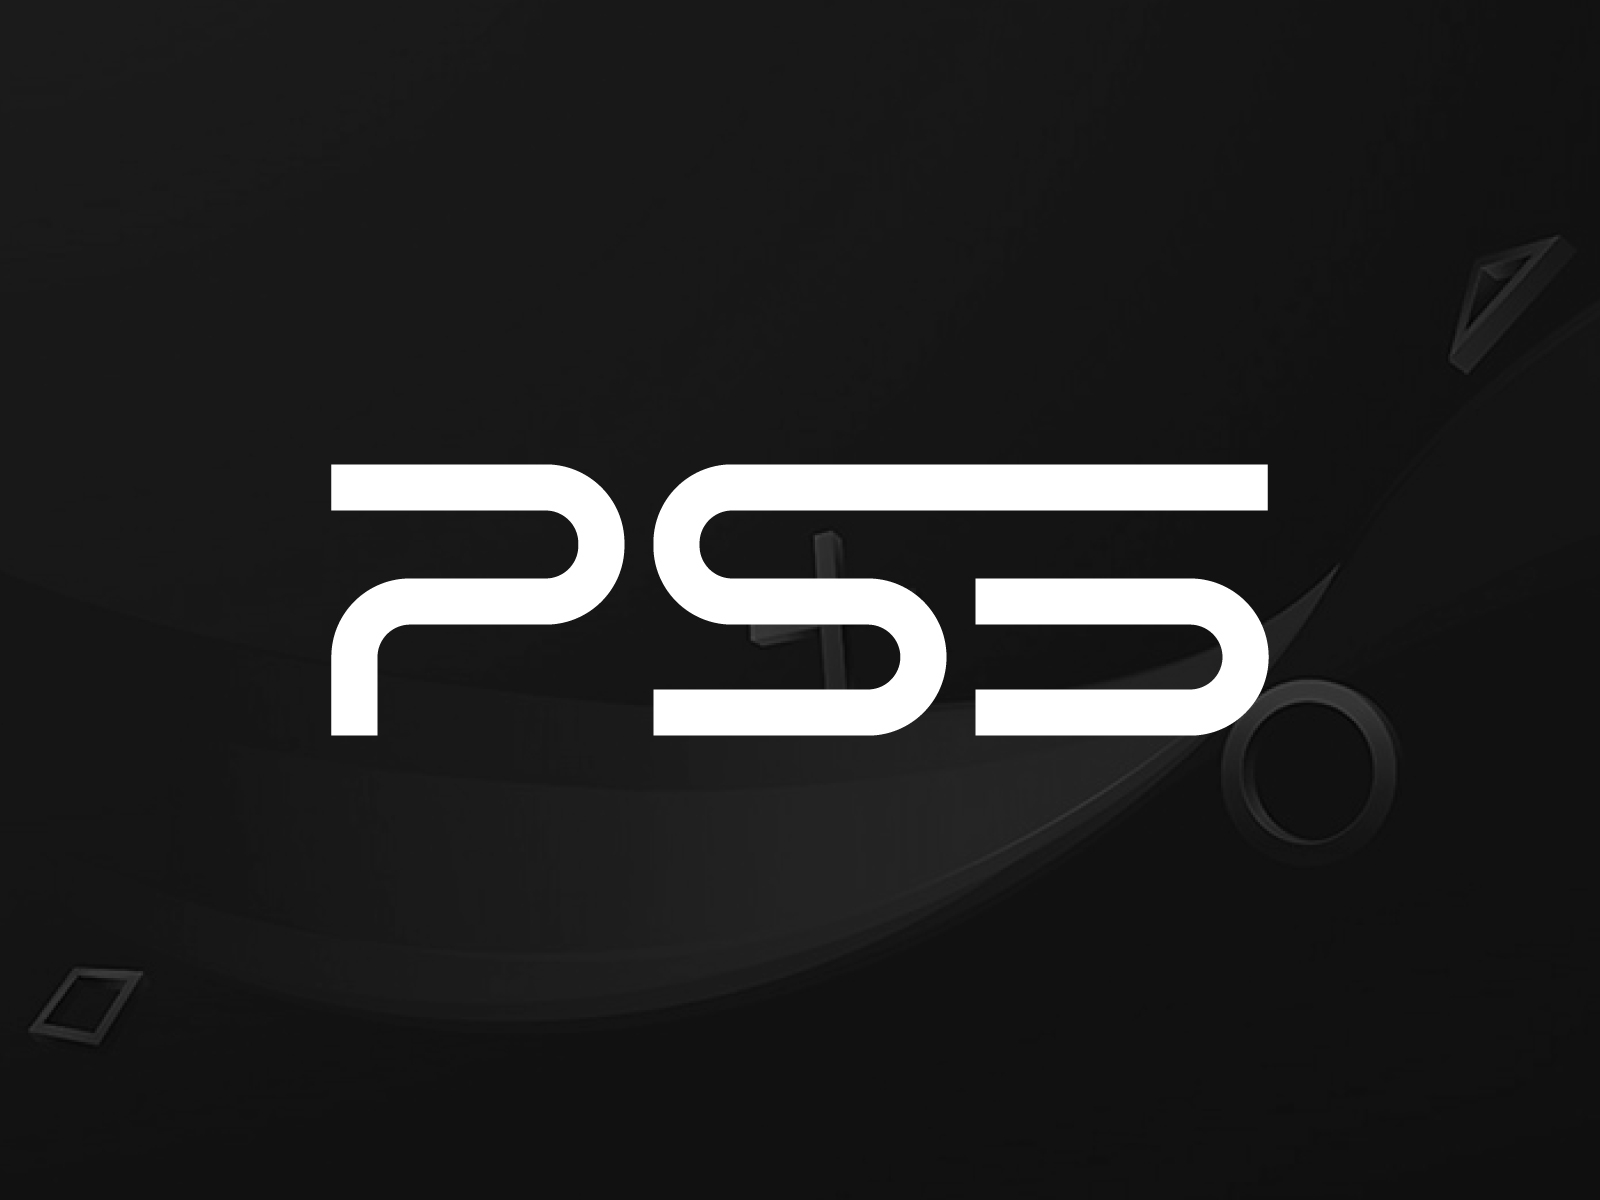 Ps5 сделать основной. Sony ps5 logo. PLAYSTATION 5. Sony PLAYSTATION 5 logo. Ps5 logo vector.